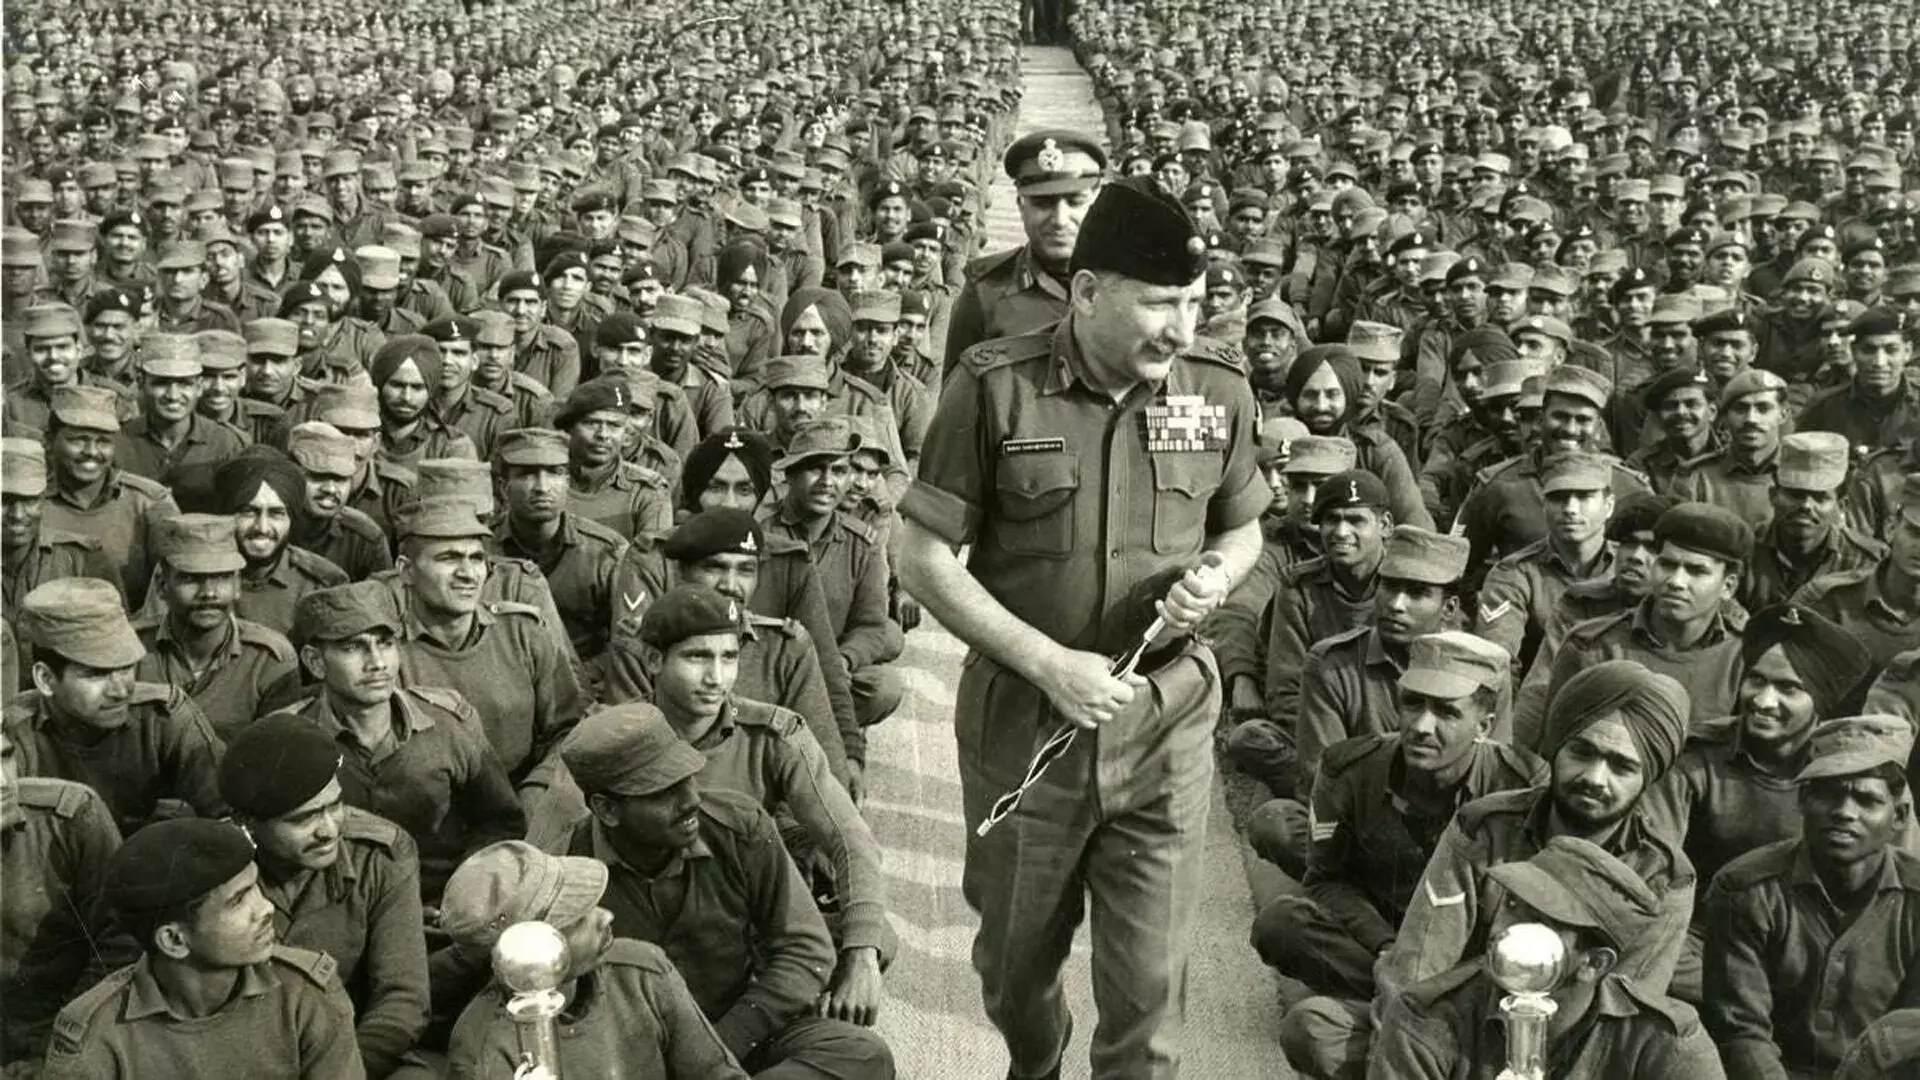 सैम मानेकशॉ की 110वीं जयंती: जानिए भारत के पहले फील्ड मार्शल के बारे में सब कुछ